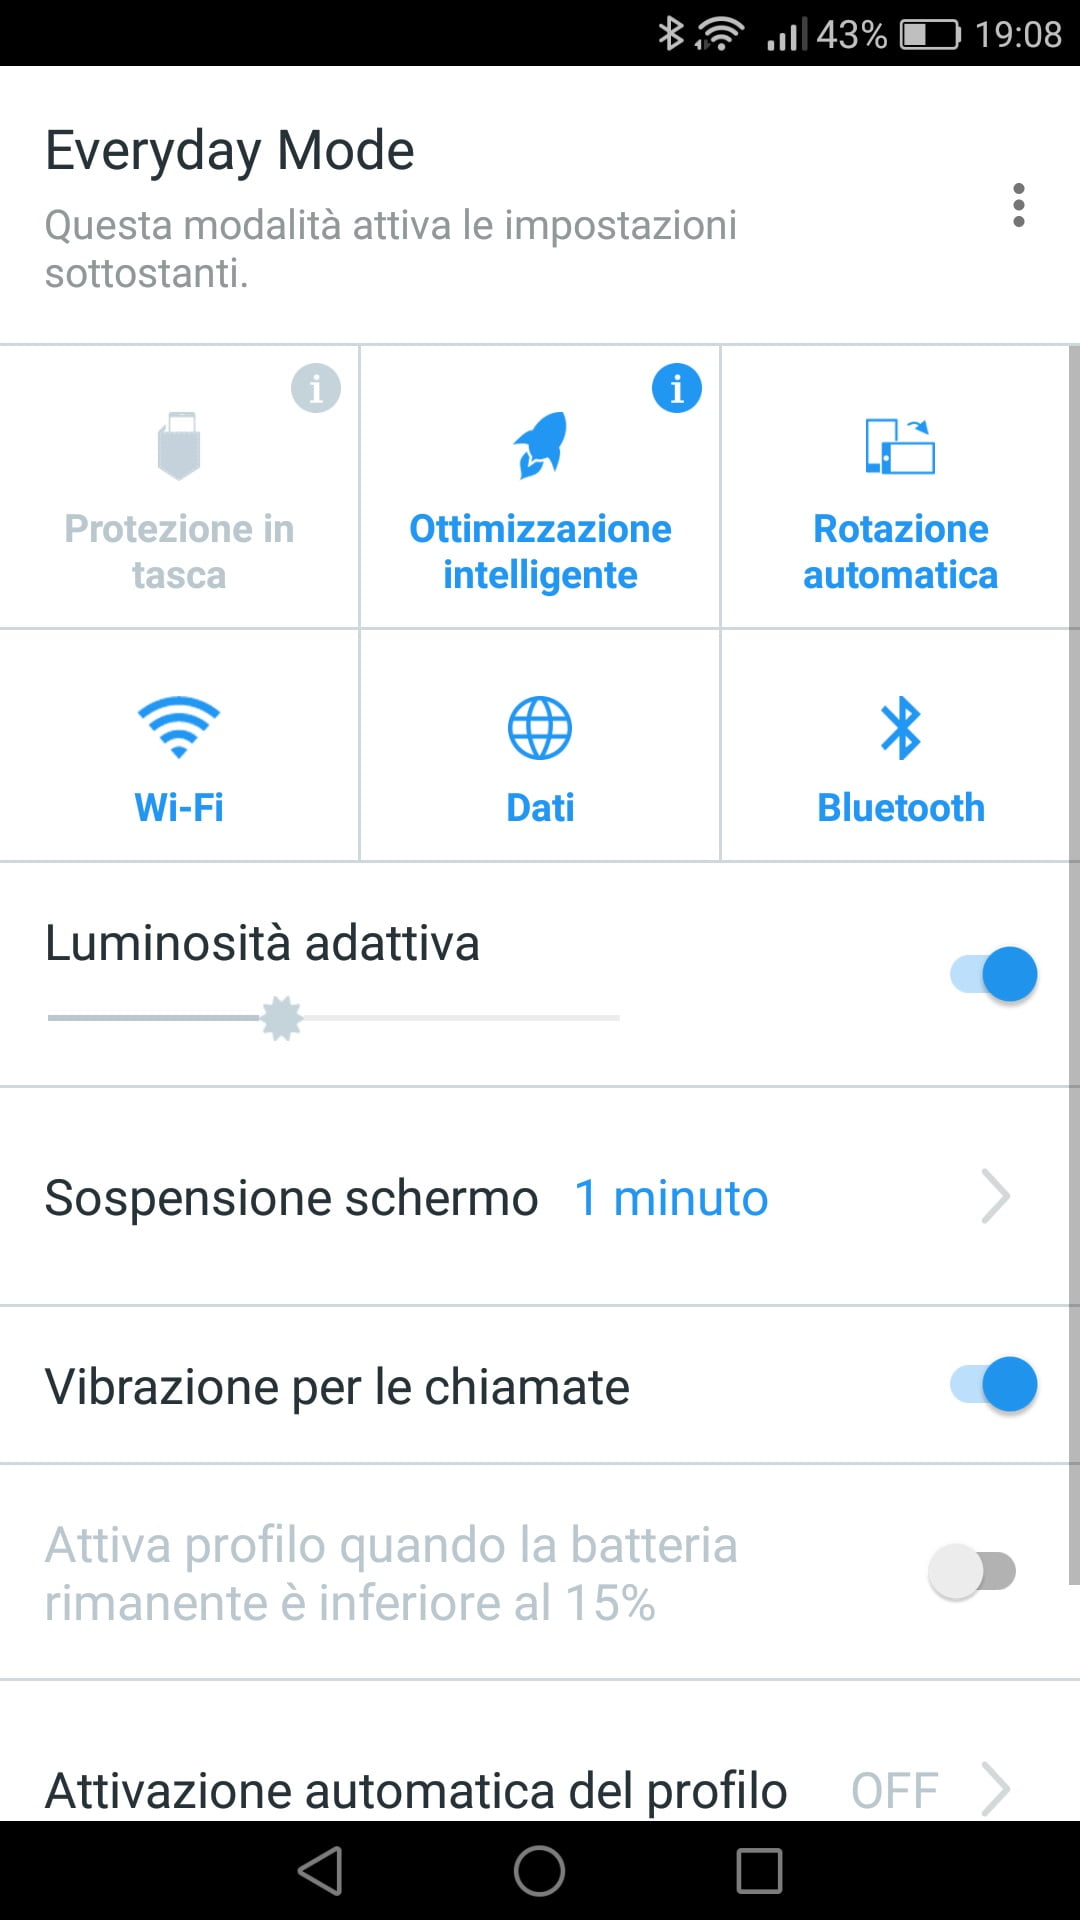 Niente più esperienze imbarazzanti con lo smartphone grazie ad Avira Optimizer per Android 3